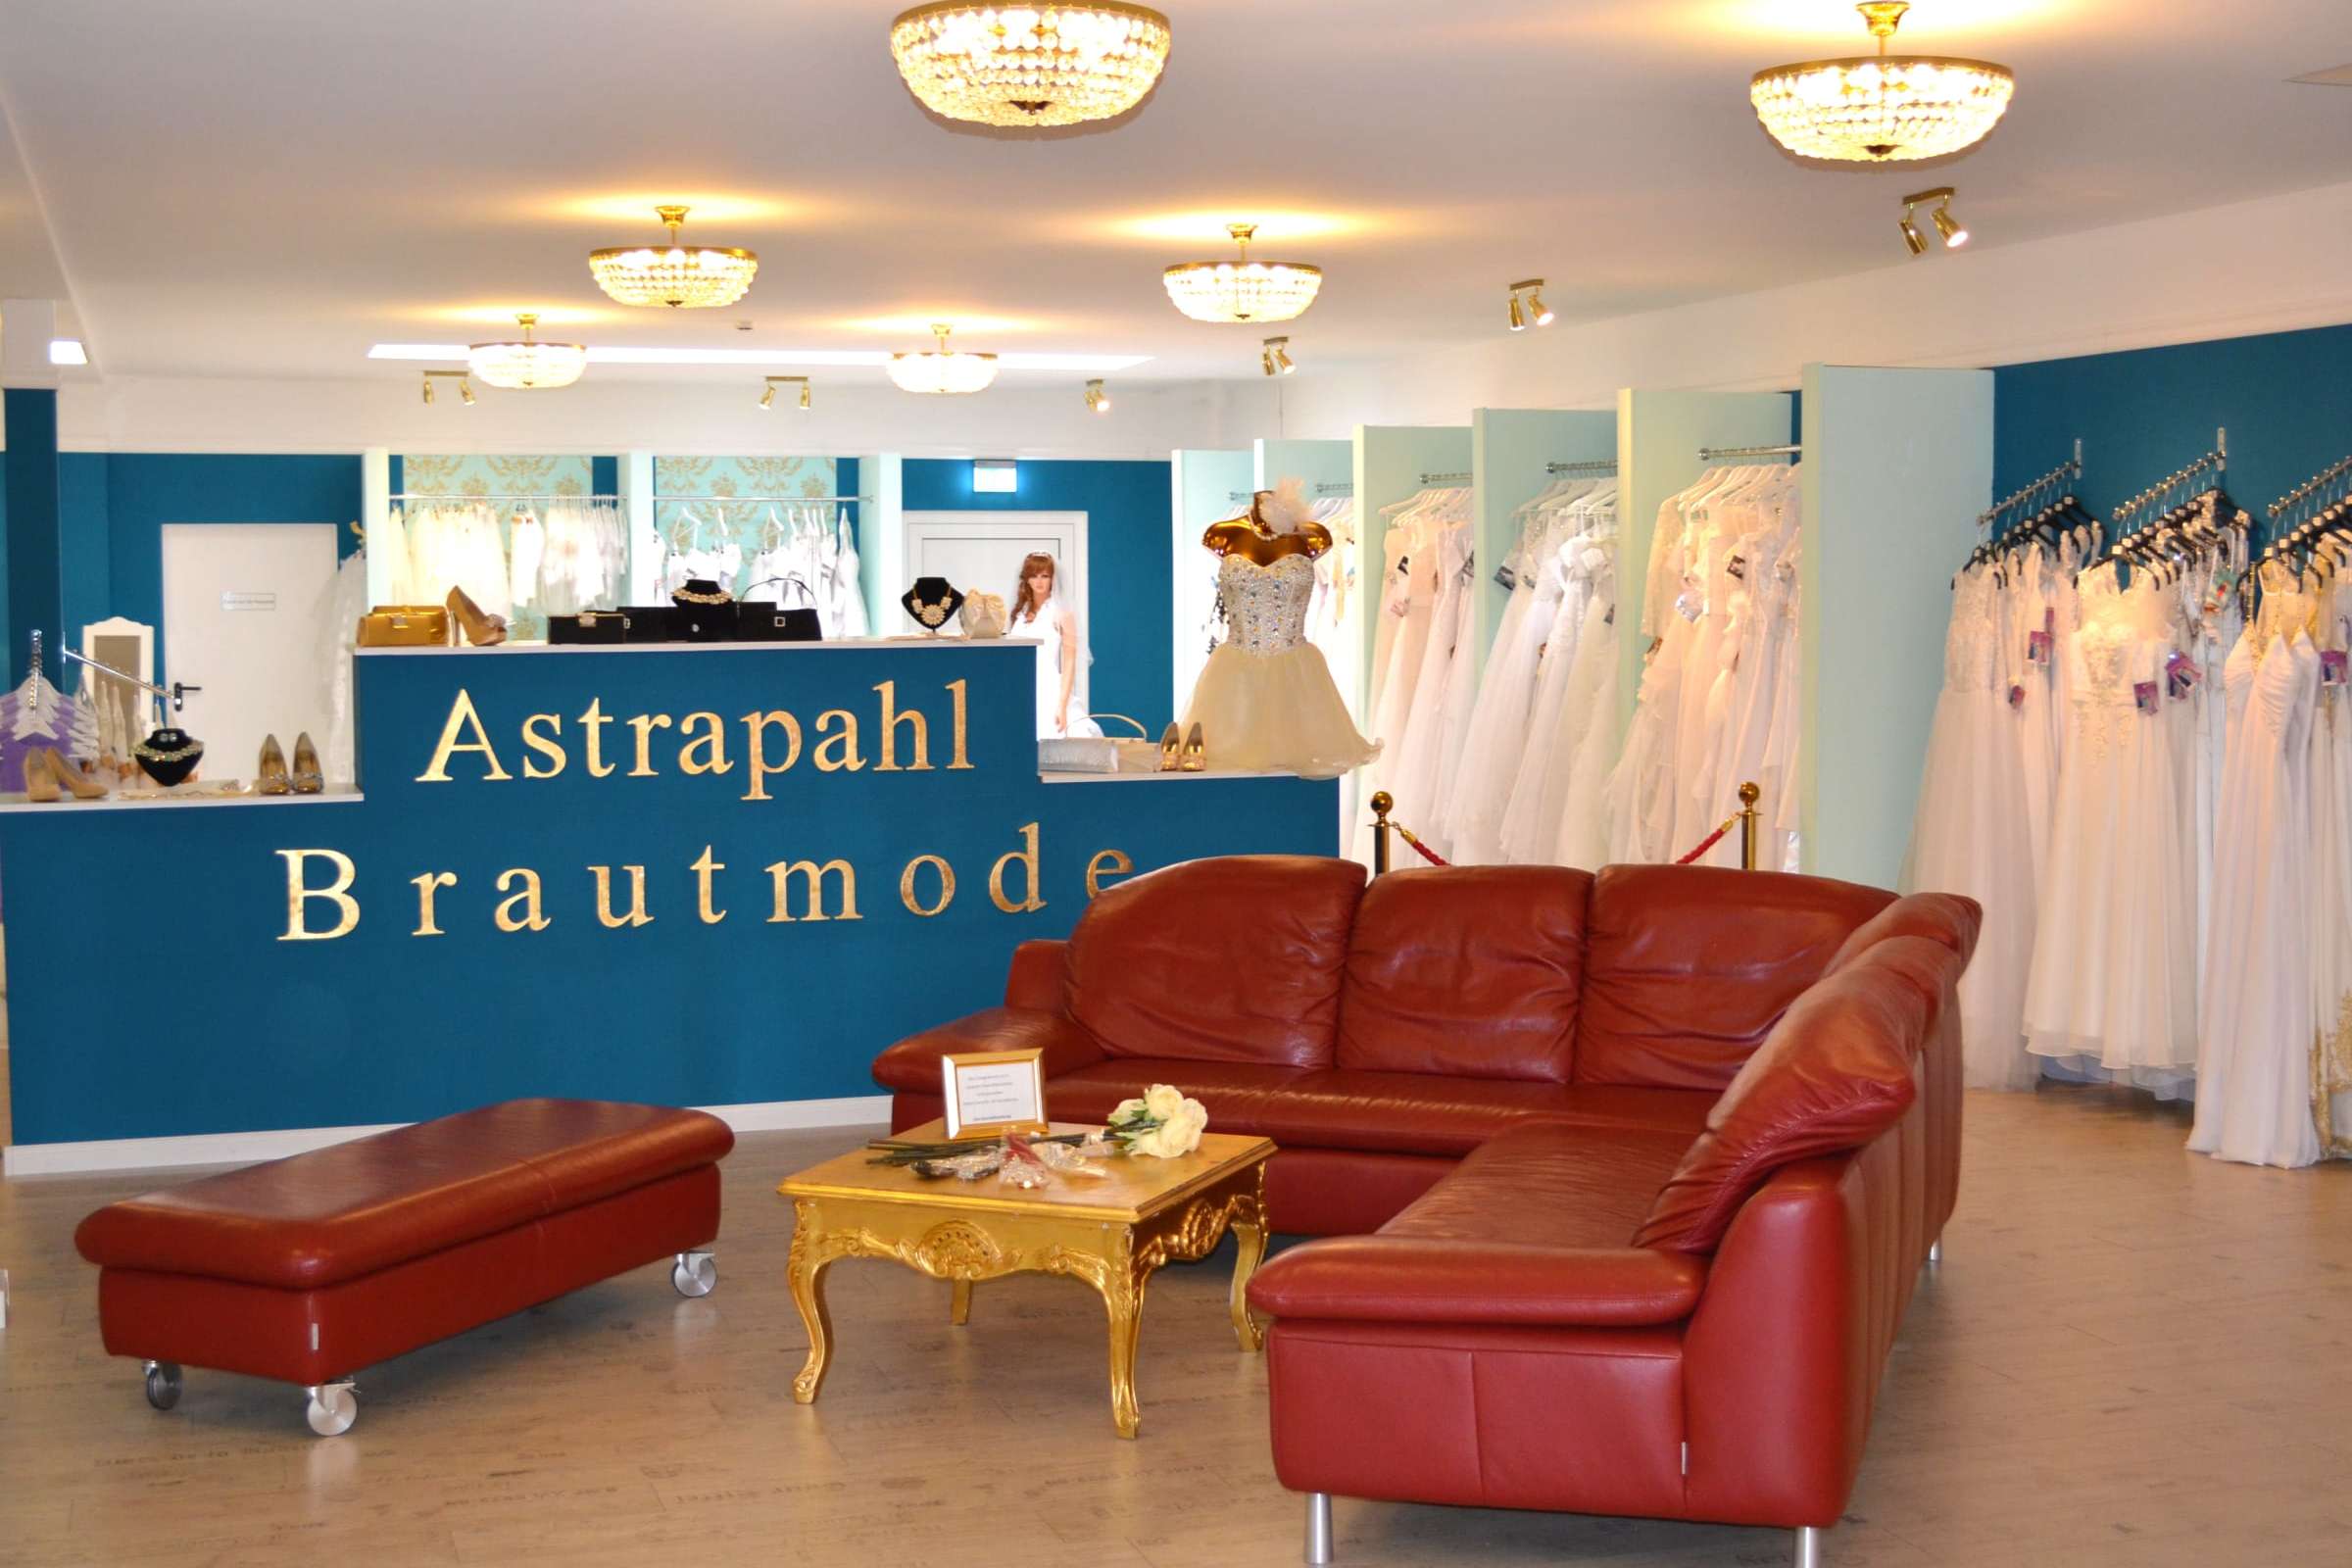 Astrapahl Brautmode und Festmode - Brautmode in Bleckede